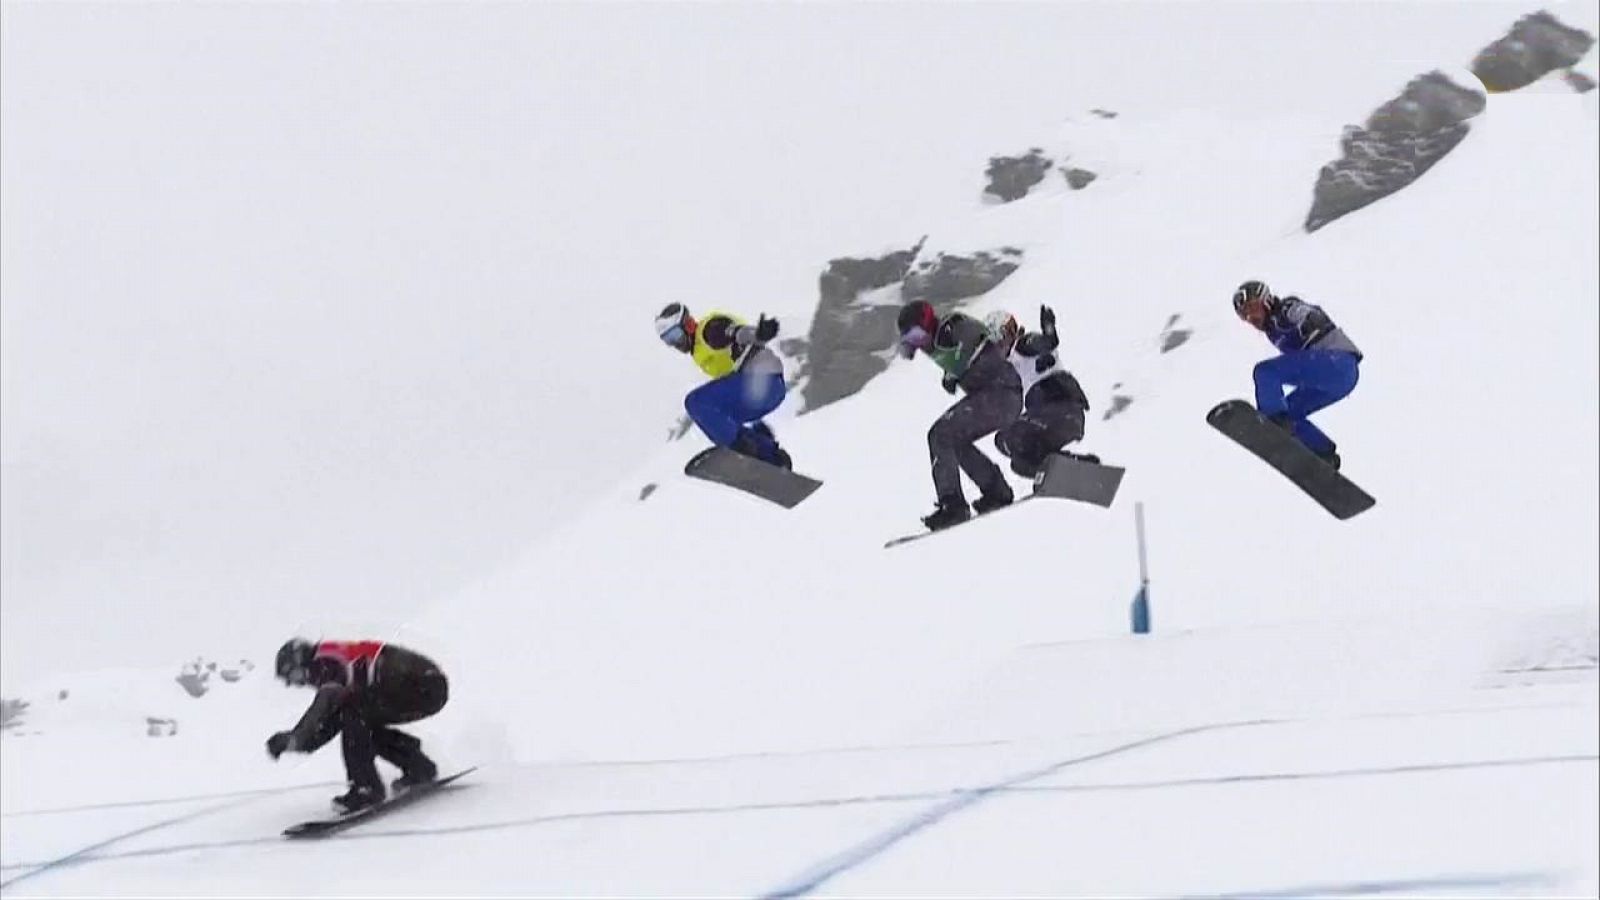 Snowboard - Copa del Mundo 2018/2019 Finales Snowboard Cross Prueba Cervinia